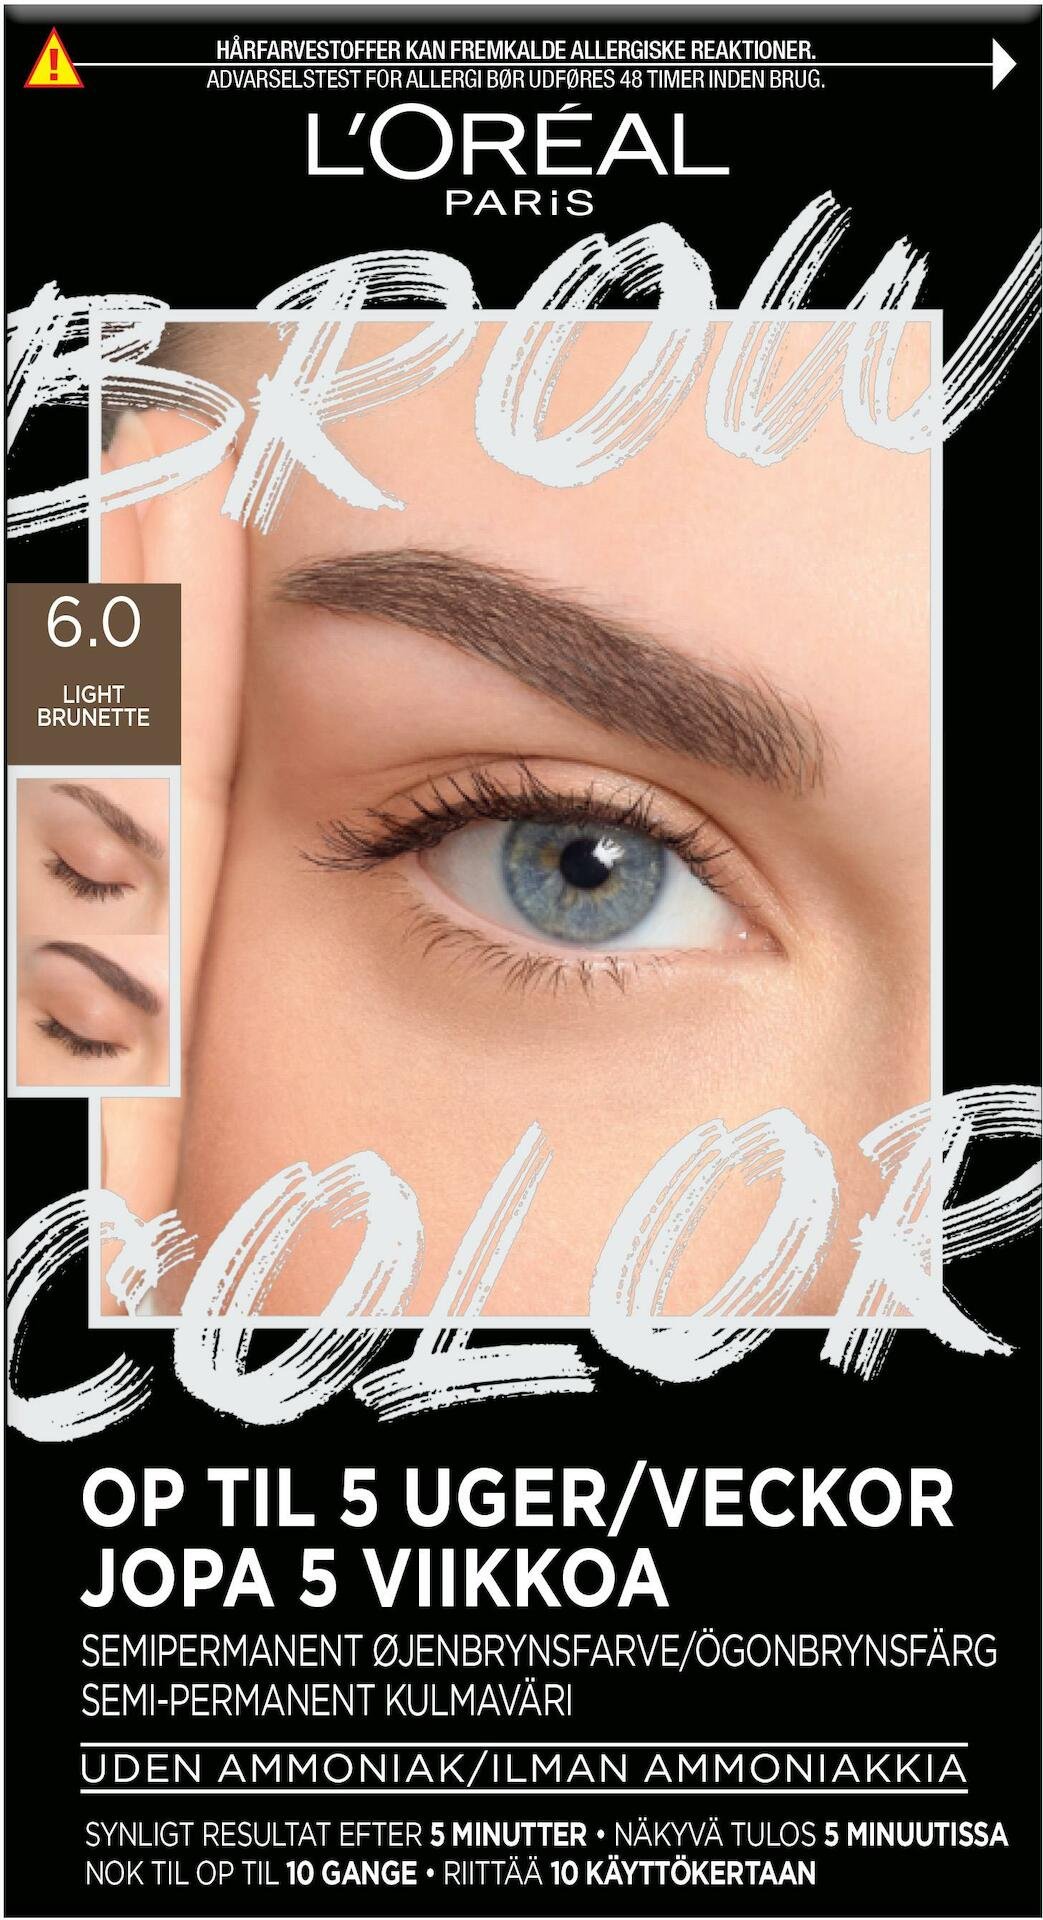 L'Oréal Paris Brow Color Kit 6.0 Light Brunette 30 ml